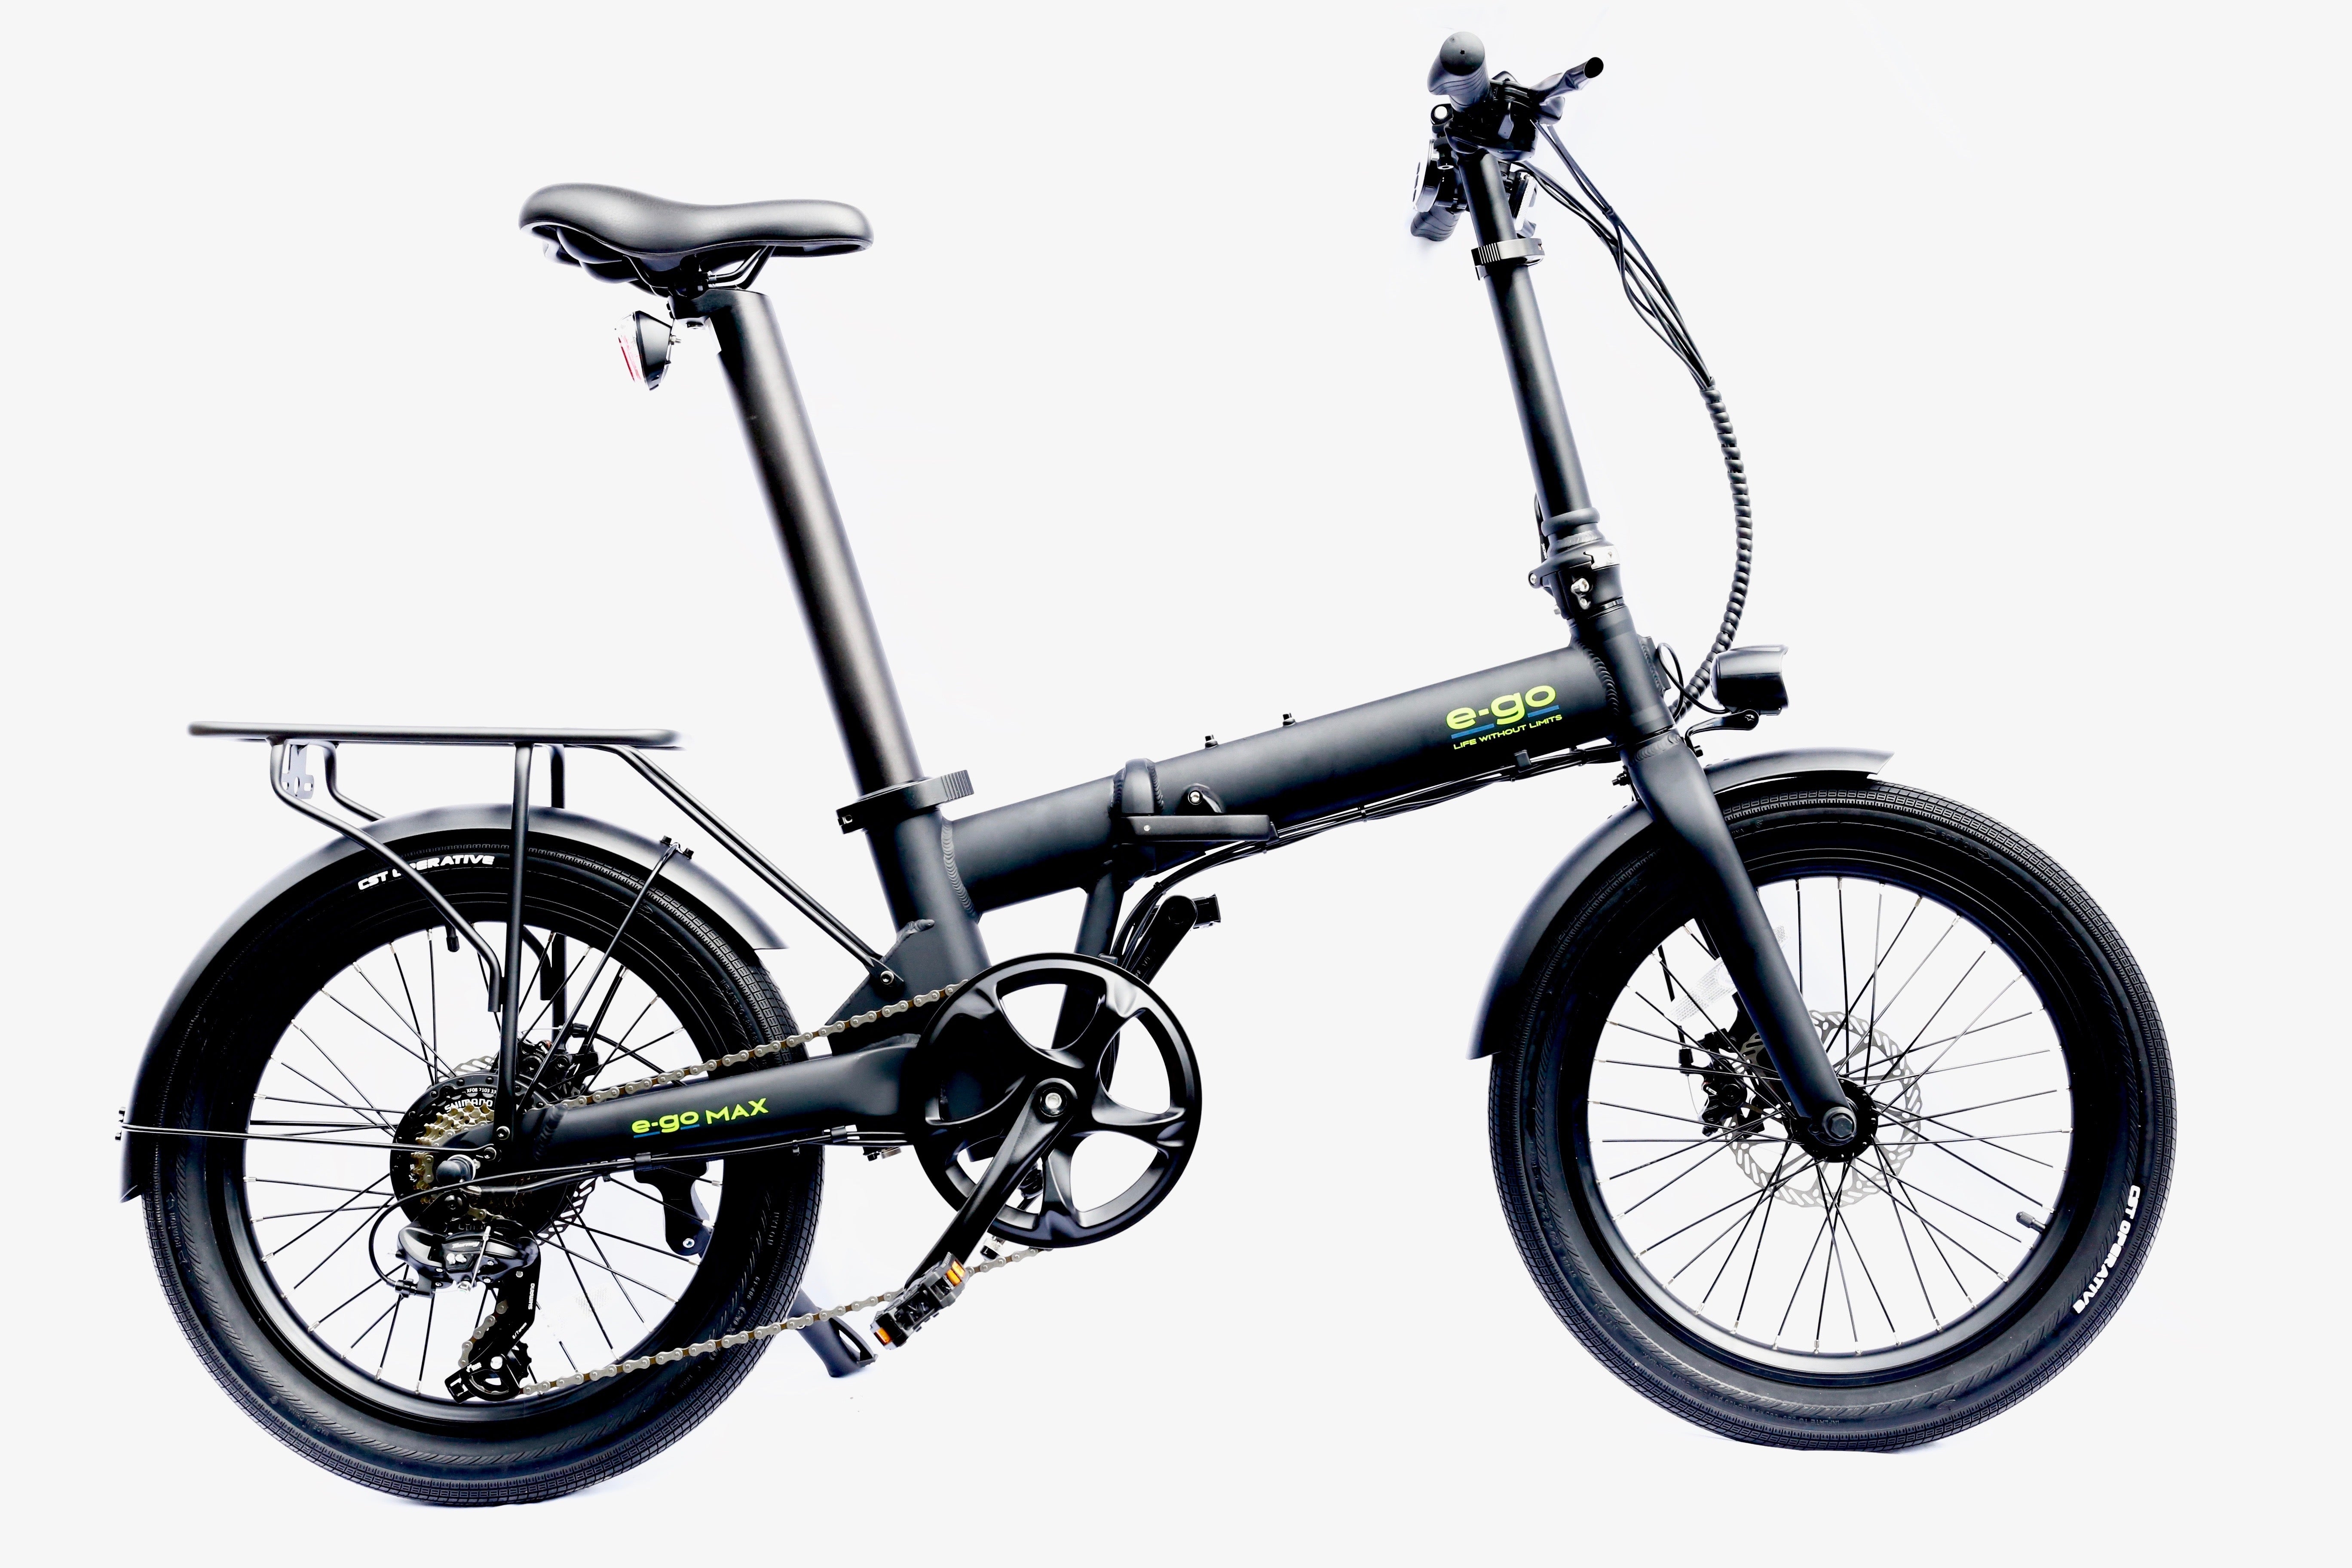 e-Go Bike Max Folding E-Bike 250W, Satin Black – Urban Travel